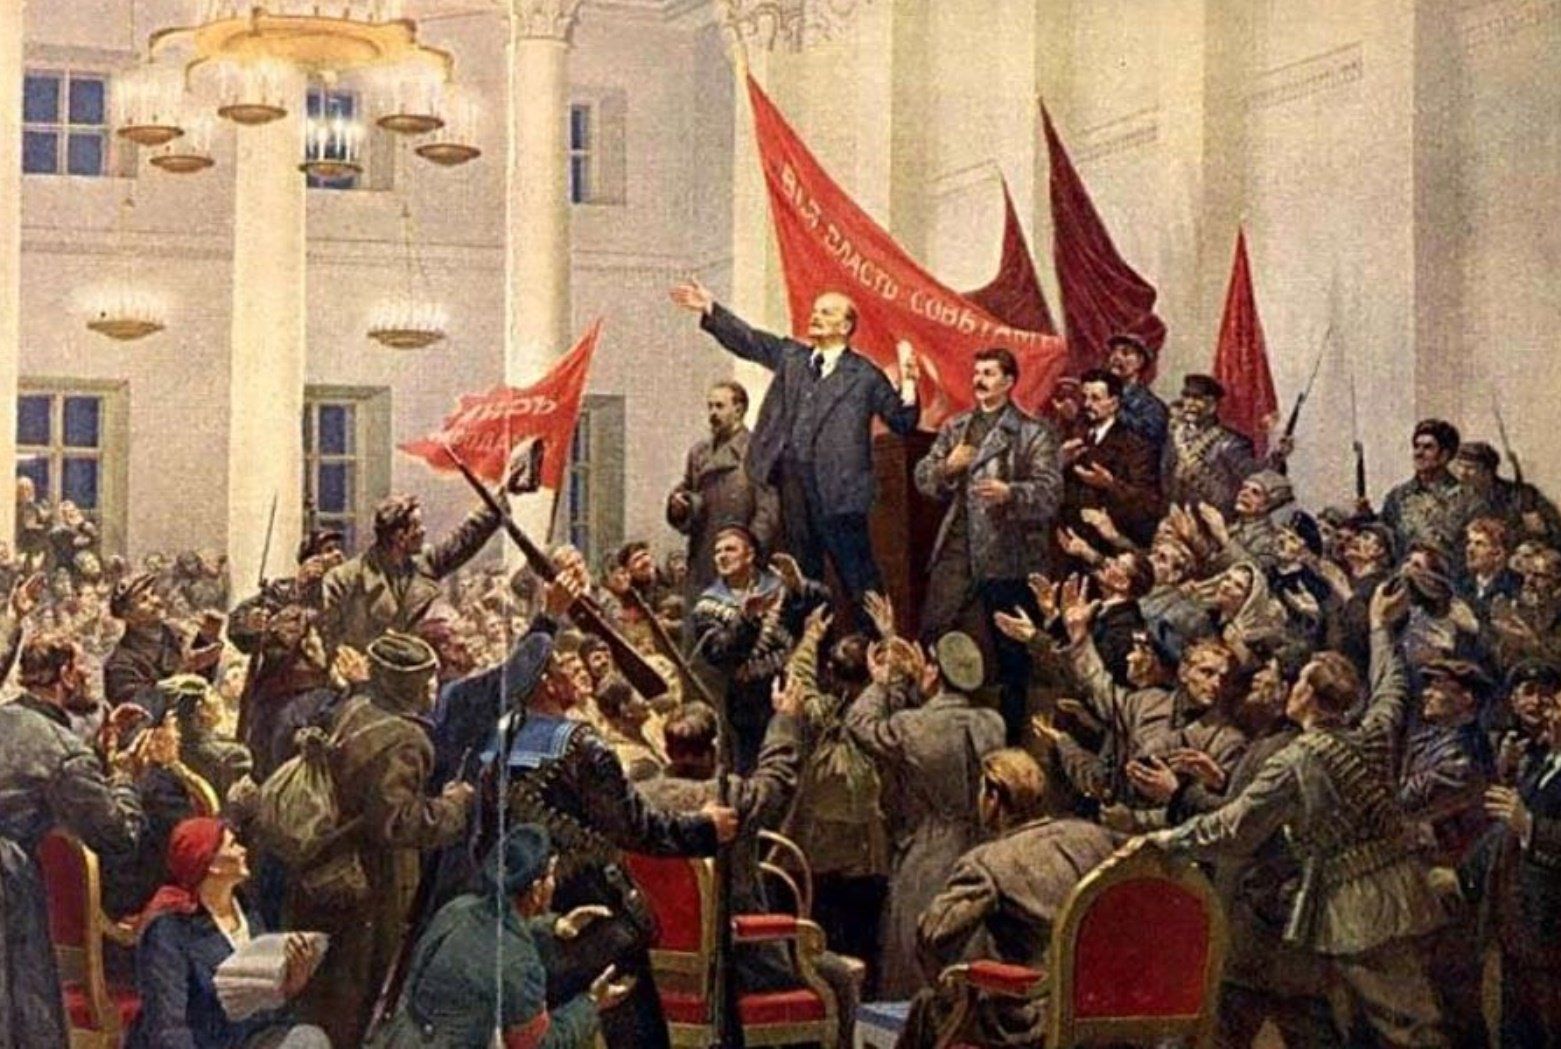 Cách mạng tháng Mười Nga - Hãy khám phá hình ảnh về Cách mạng tháng Mười Nga và cùng được trải nghiệm những khoảnh khắc lịch sử đầy kính veneration. Hãy cùng tìm hiểu và tôn vinh những người anh hùng đã hy sinh để đem lại độc lập, tự do cho quê hương Nga.